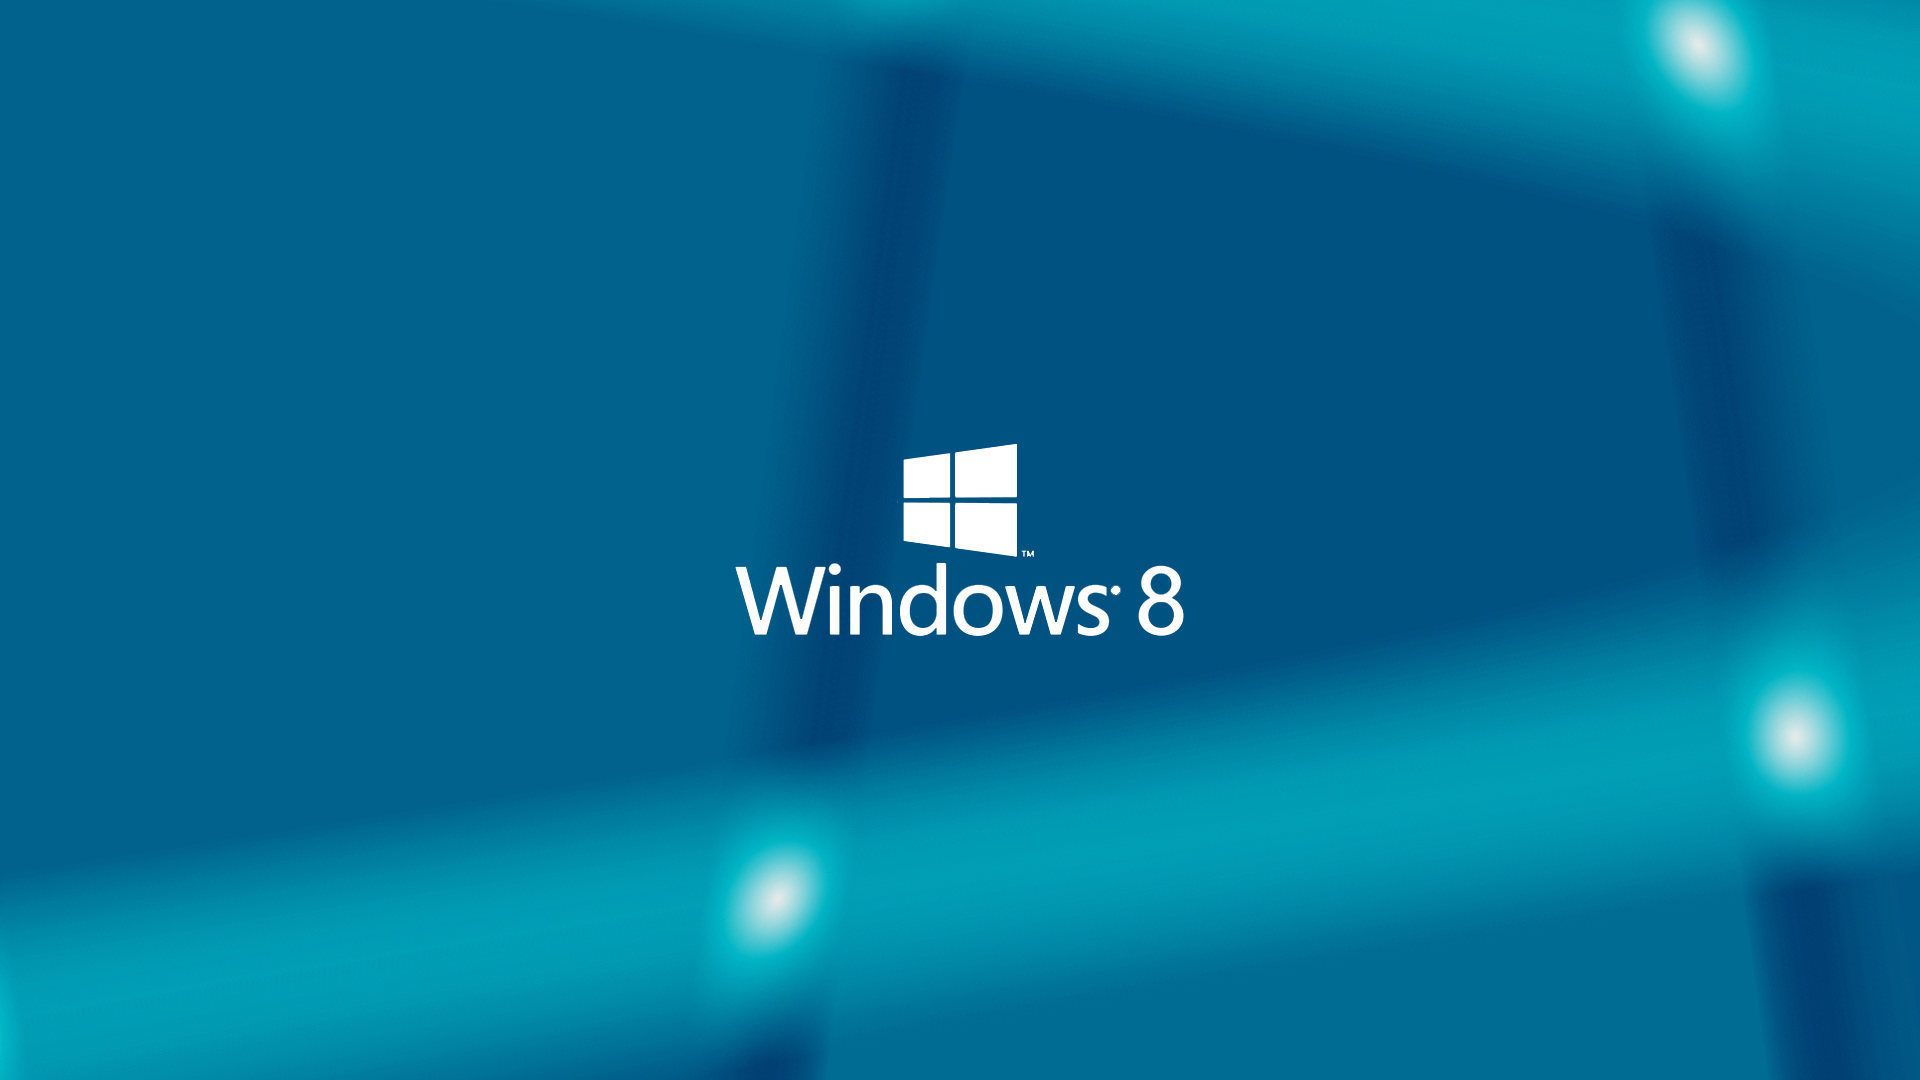 Top Windows 8 Wallpapers đem lại cho người dùng một cảm giác hài lòng với những hình nền tuyệt đẹp, chất lượng cao cùng với sắc màu tươi sáng. Hãy tham gia để tìm kiếm lựa chọn hình nền phù hợp với phong cách và sở thích của bạn.